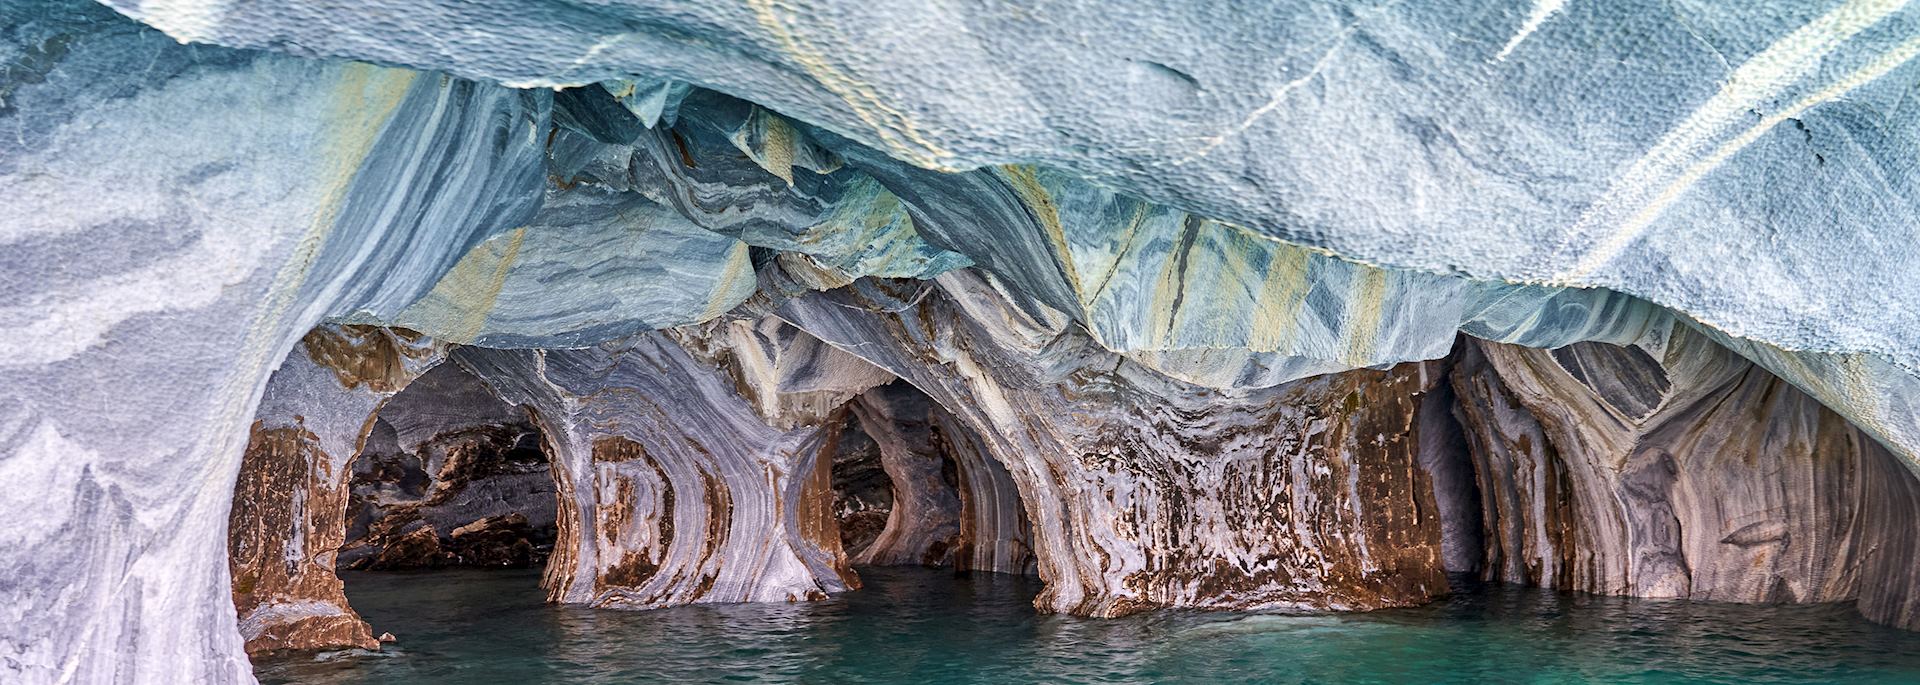 Marble Caves, Aysén